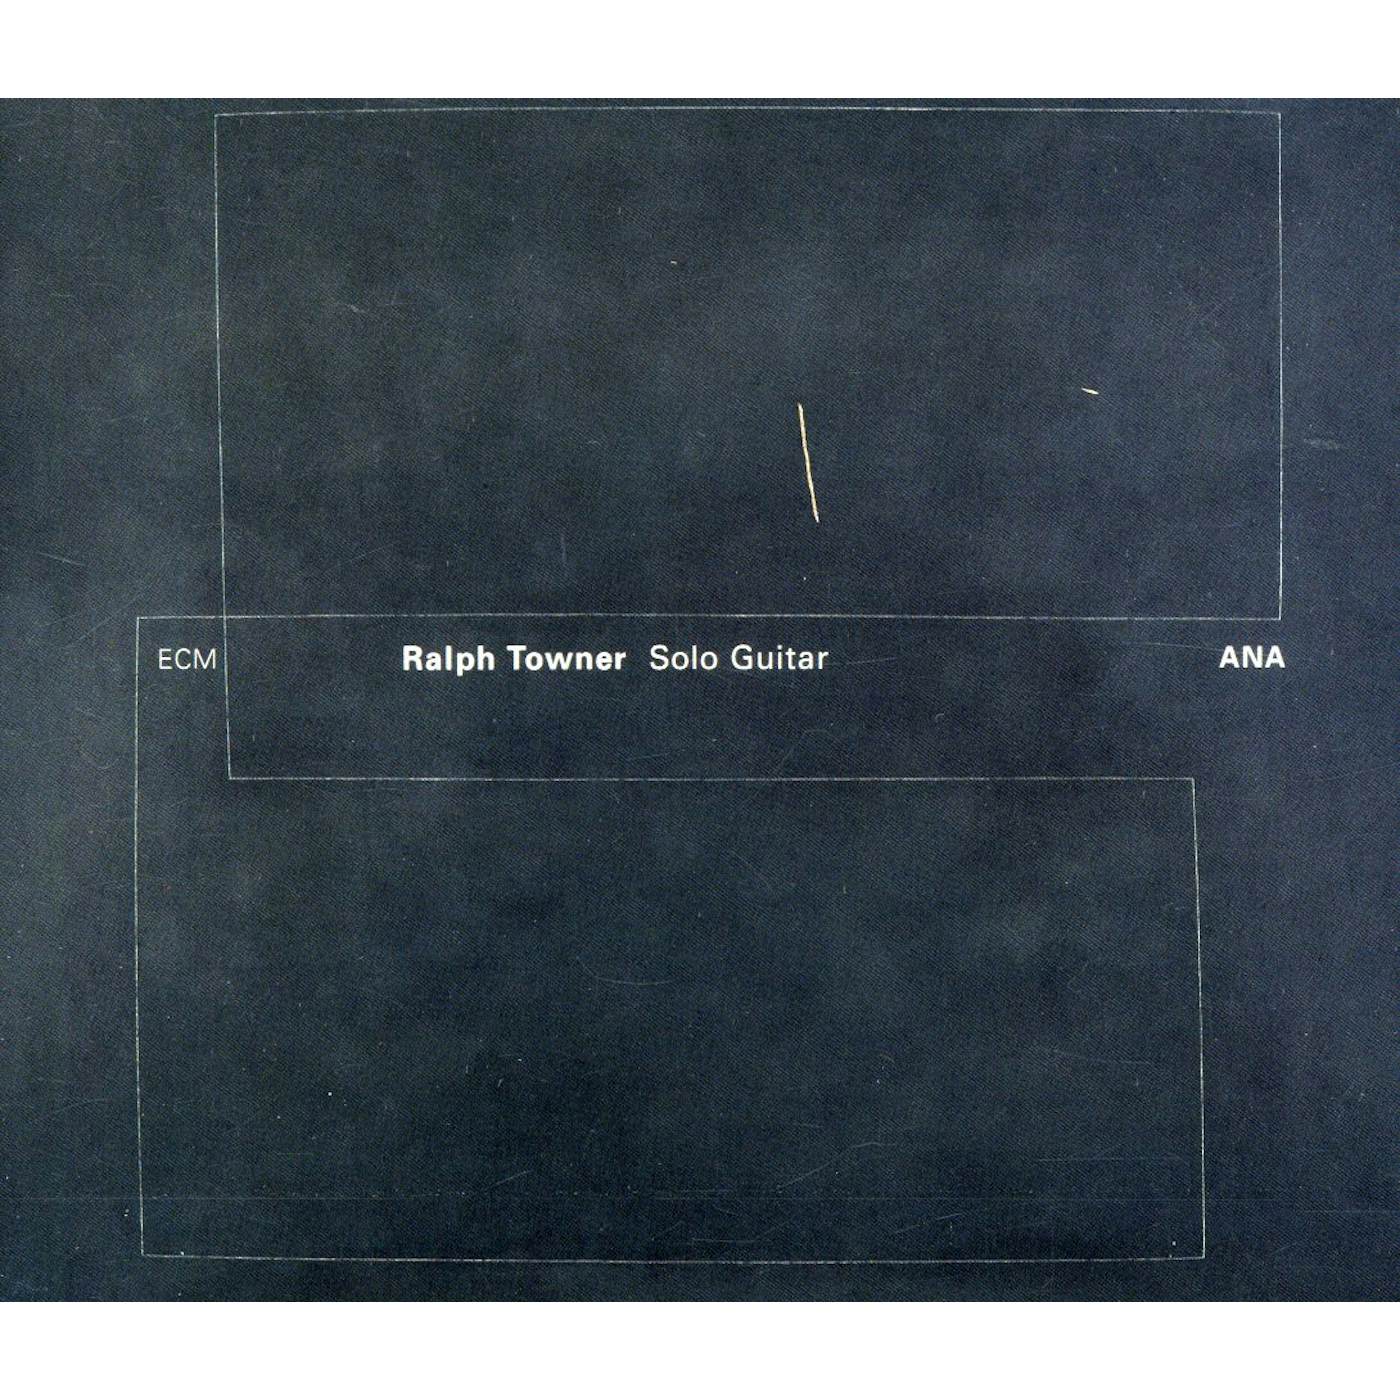 Ralph Towner ANA CD